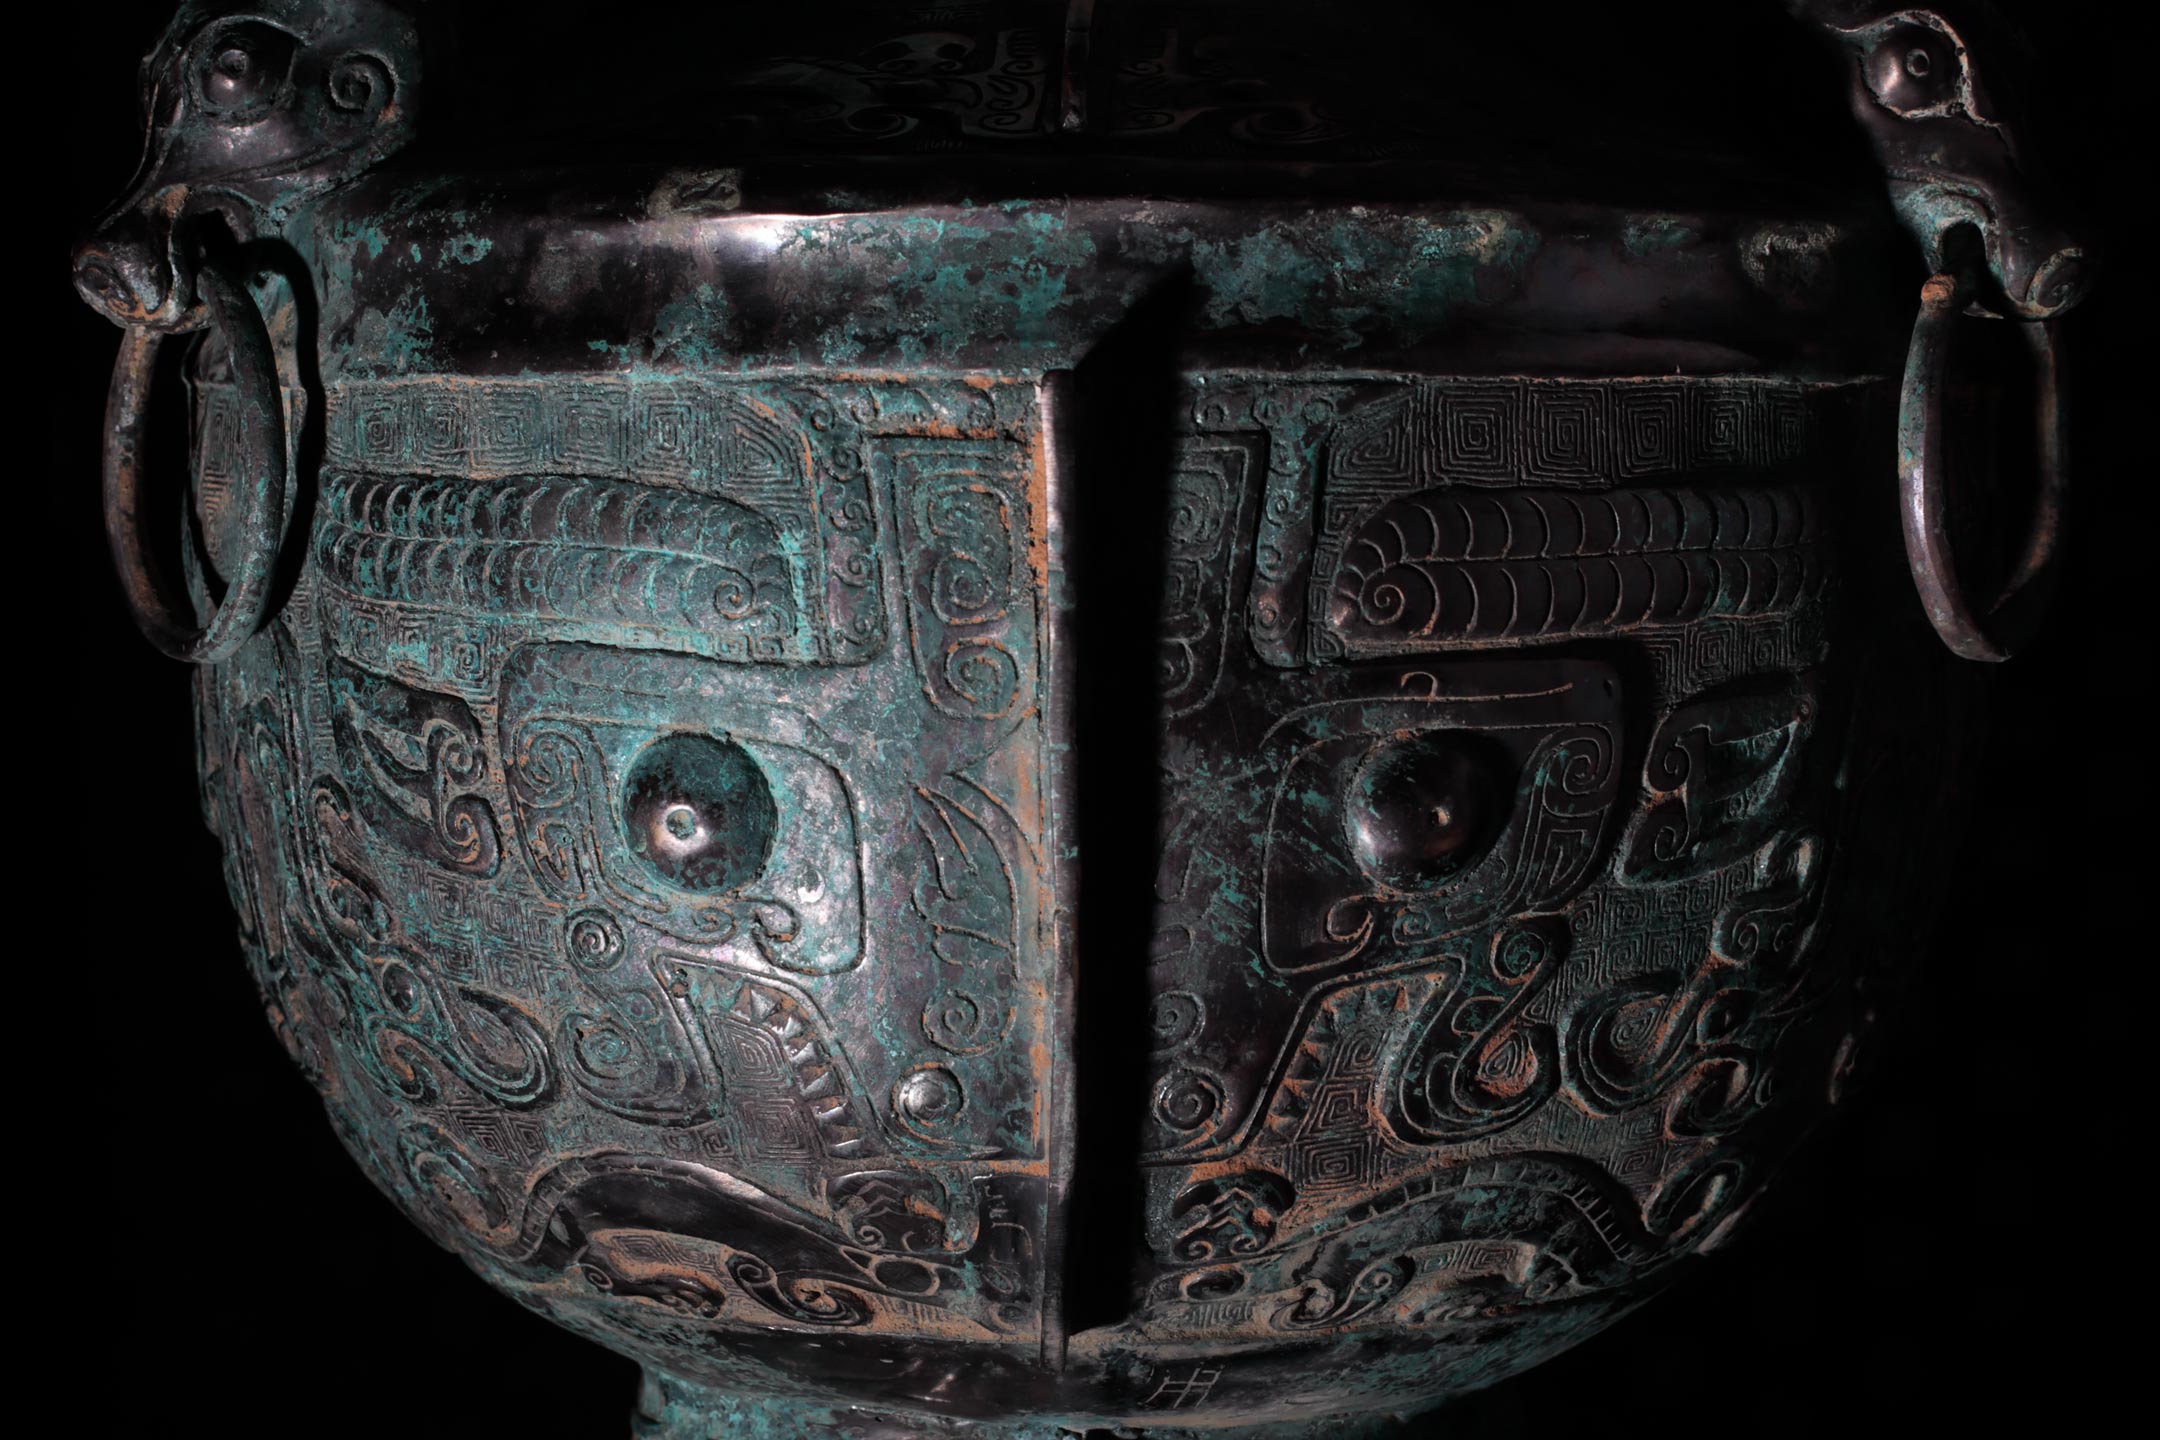 饕餮文(獣面文)と呼ばれる文様が施された殷代の祭礼用青銅器